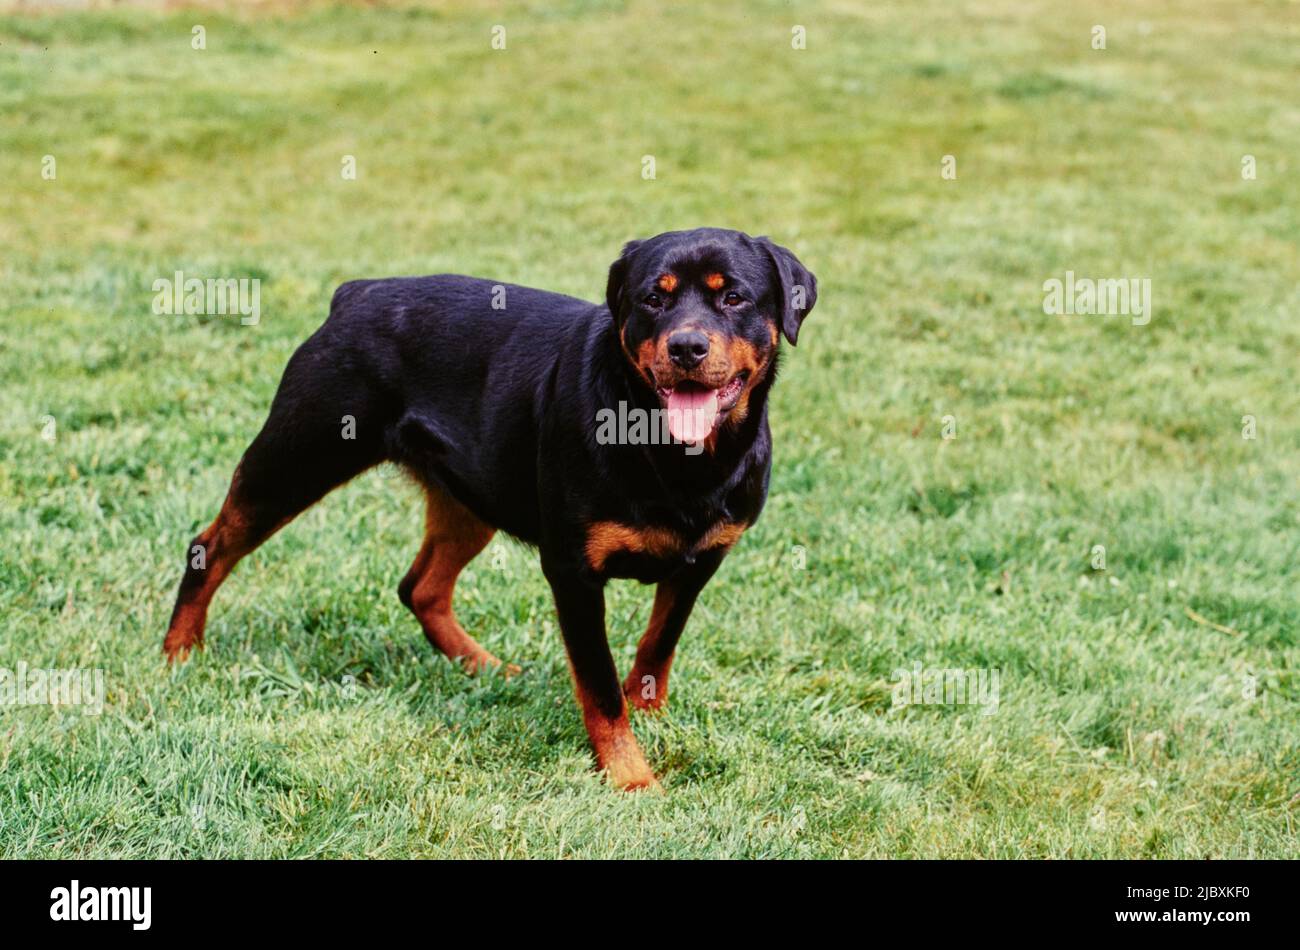 A rottweiler dog standing in short grass Stock Photo